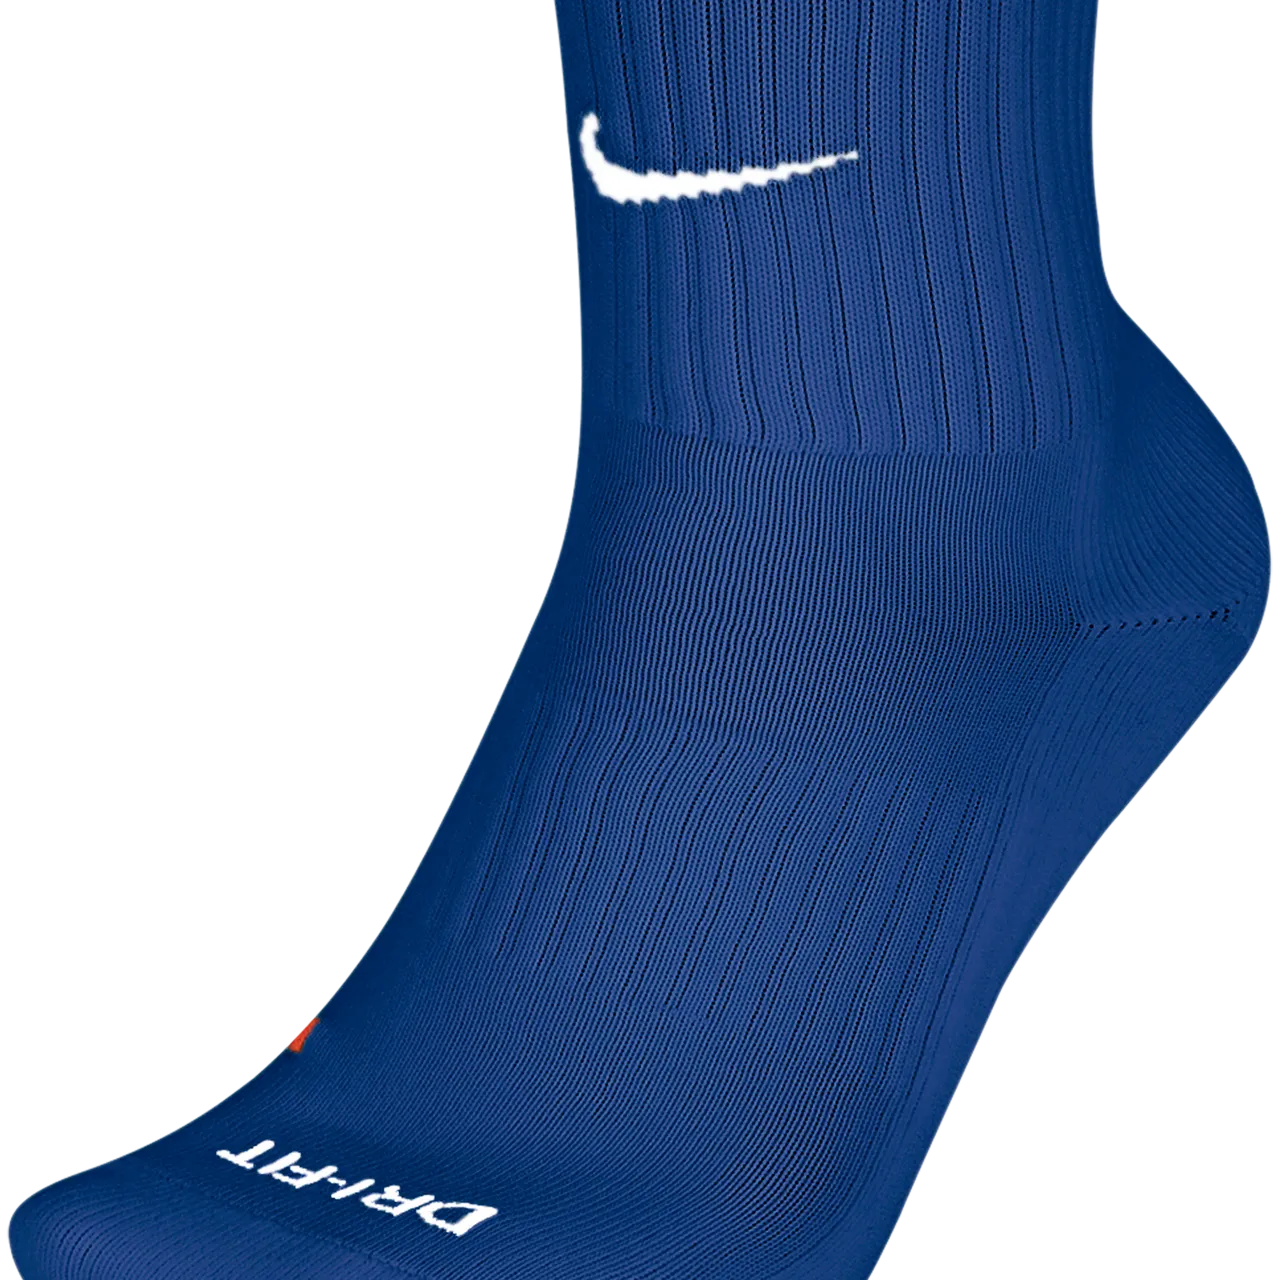 Nike Academy Over-The-Calf Football Socks - Blue - Nylon